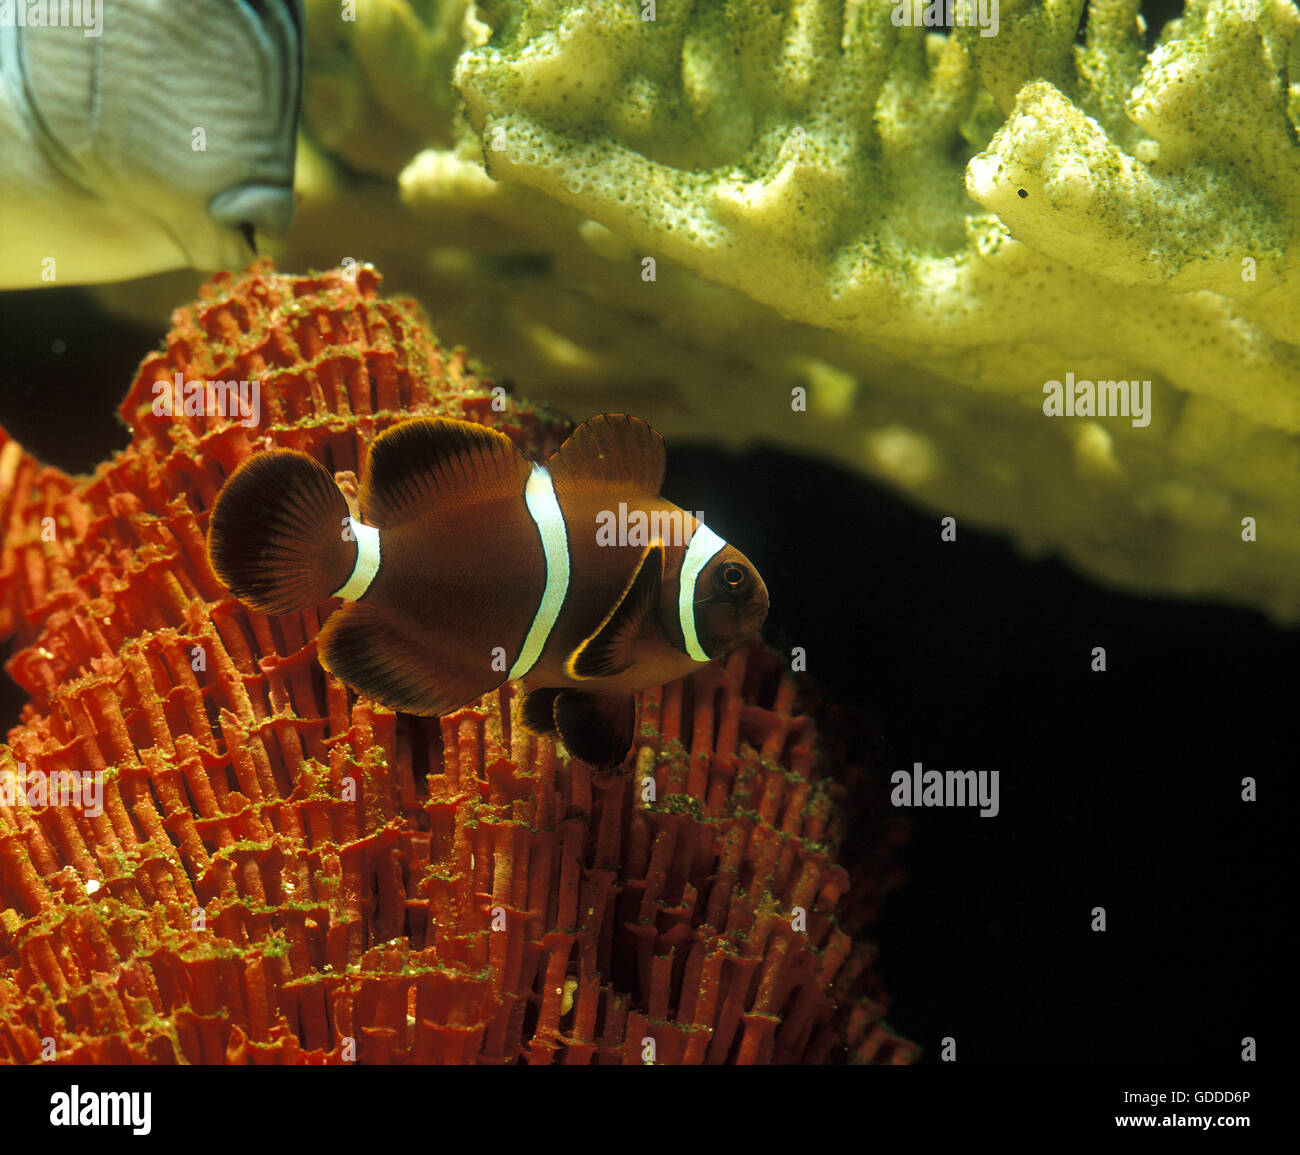 La colonna vertebrale Anemonefish guancia o Maroon Clownfish, premnas biaculeatus, con corallo Foto Stock